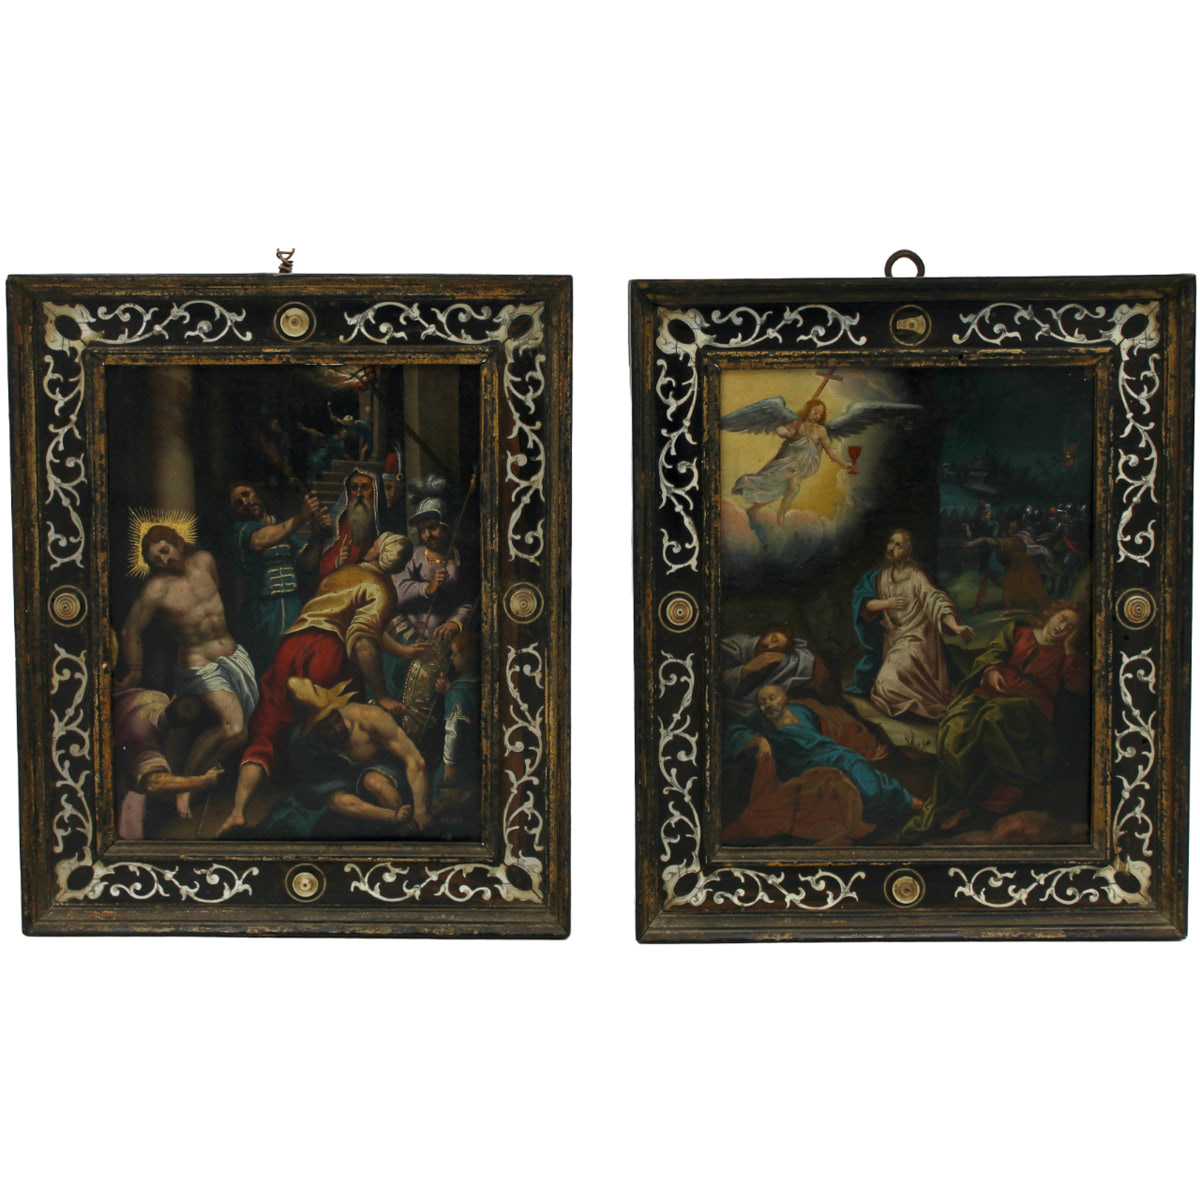 Pittore fiammingo del secolo XVIII "Scene sacre" - Flemish painter of the 18th century "Sacred scenes"